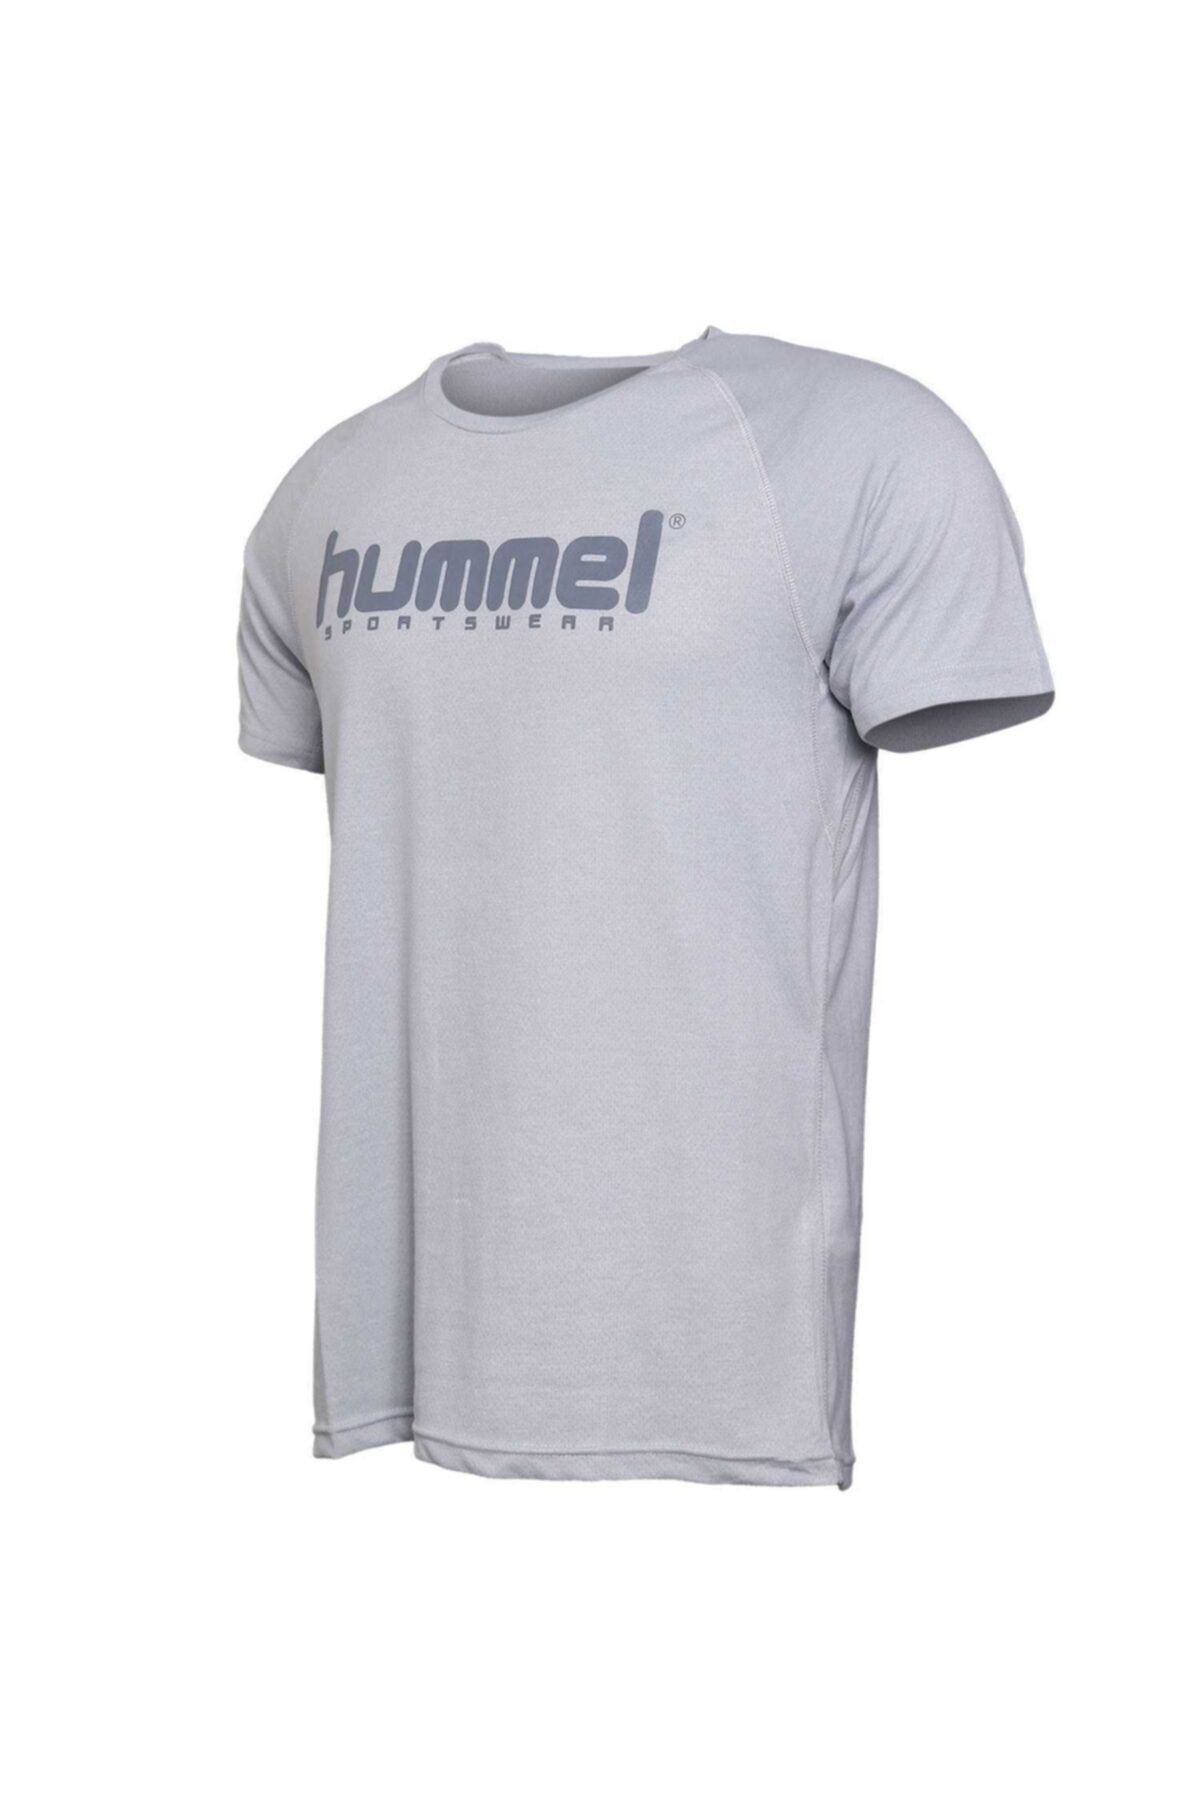 hummel Erkek T-shirt Hmlraquel  T-Shirt S/S